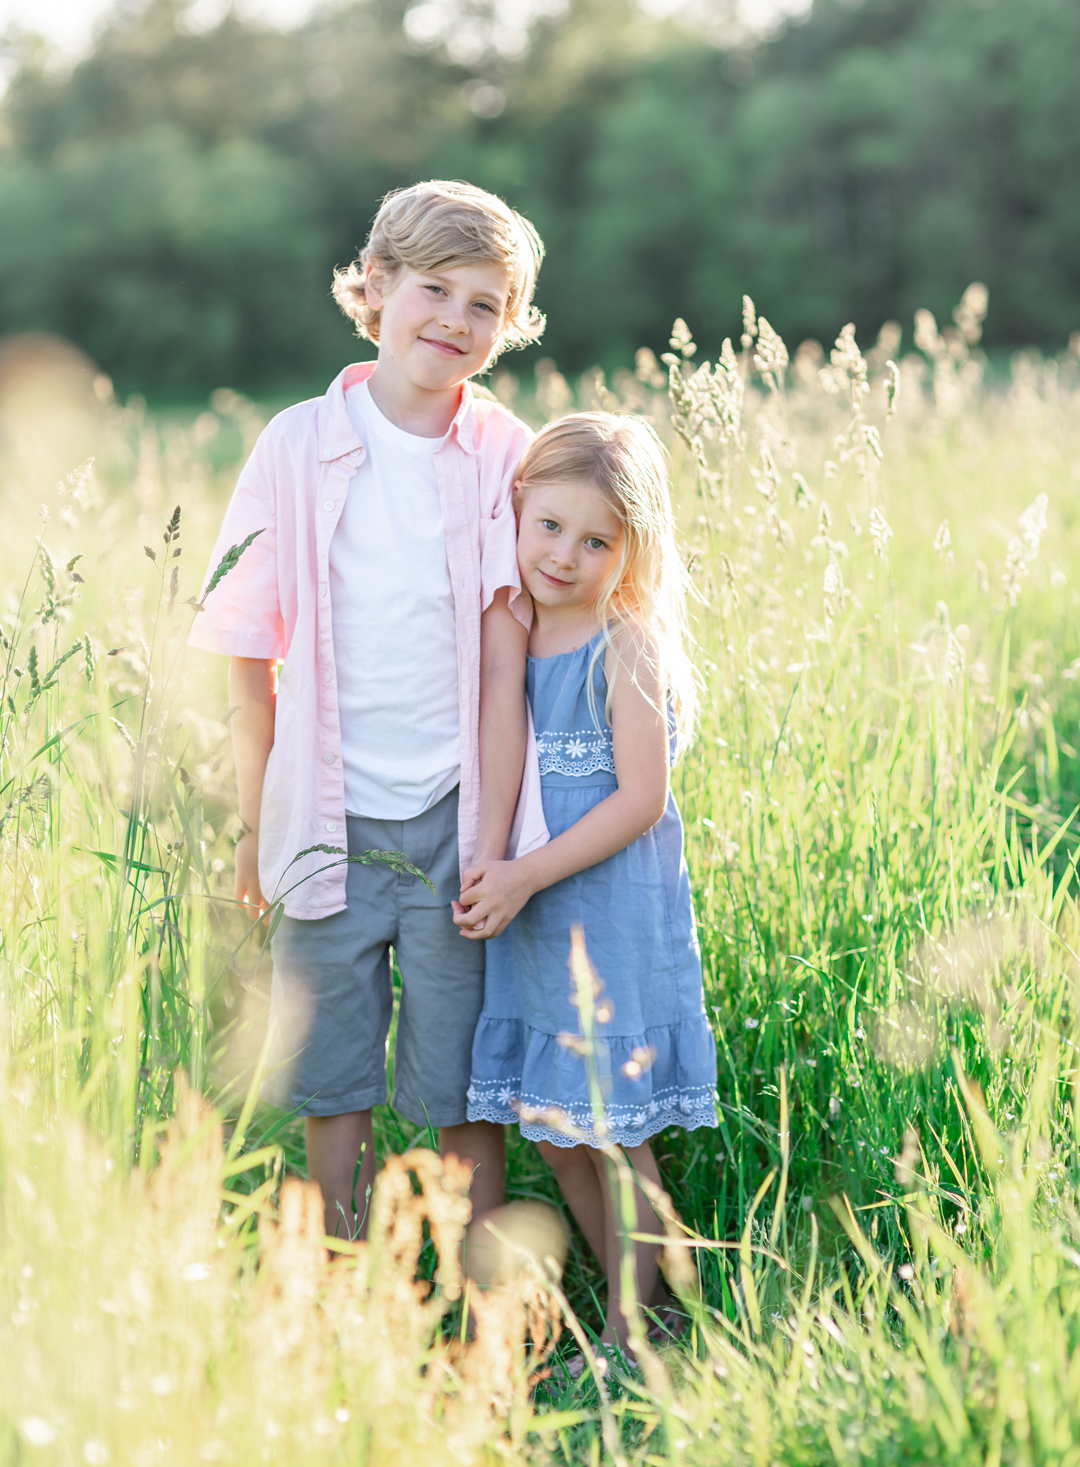 Siblings photos in a field